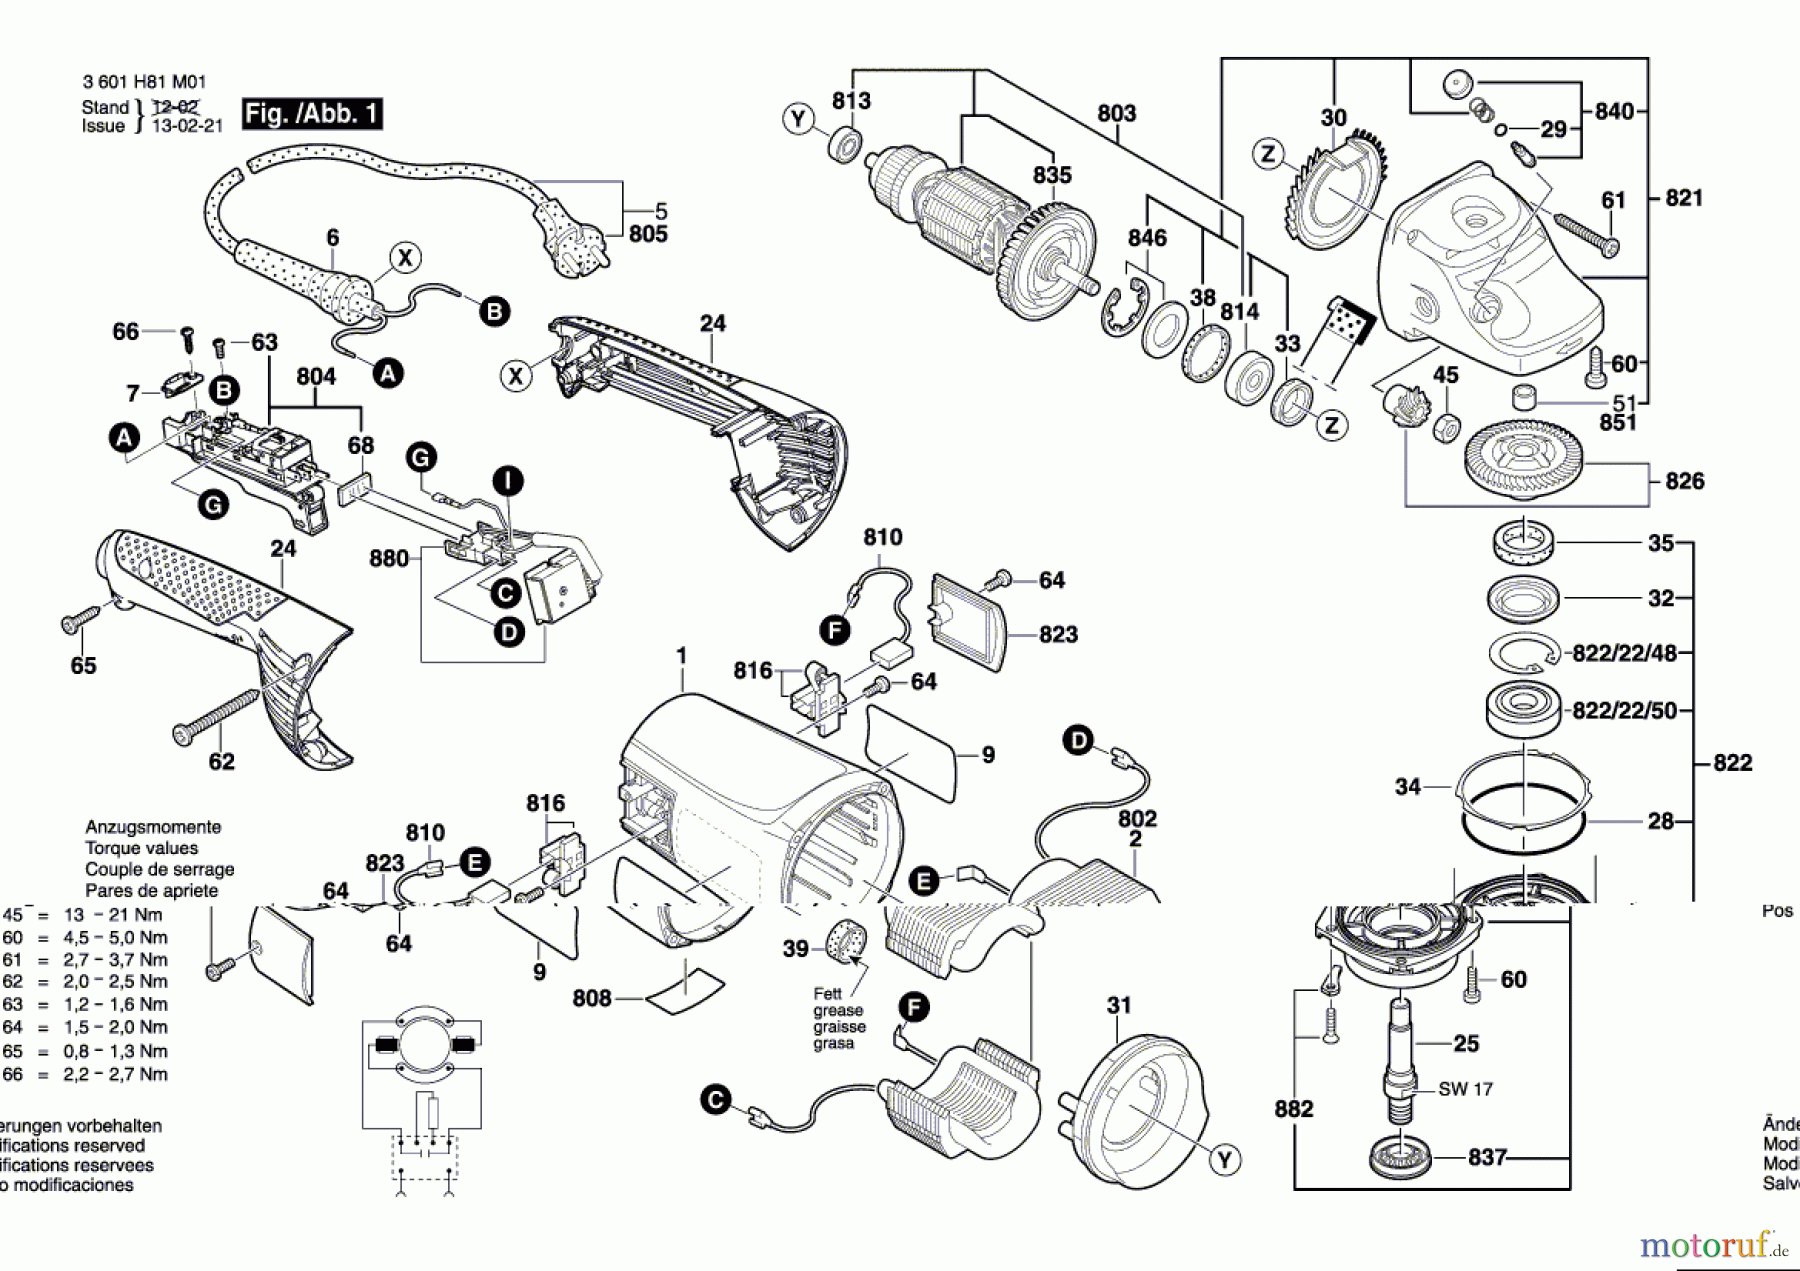  Bosch Werkzeug Winkelschleifer GWS 230 JH Seite 1